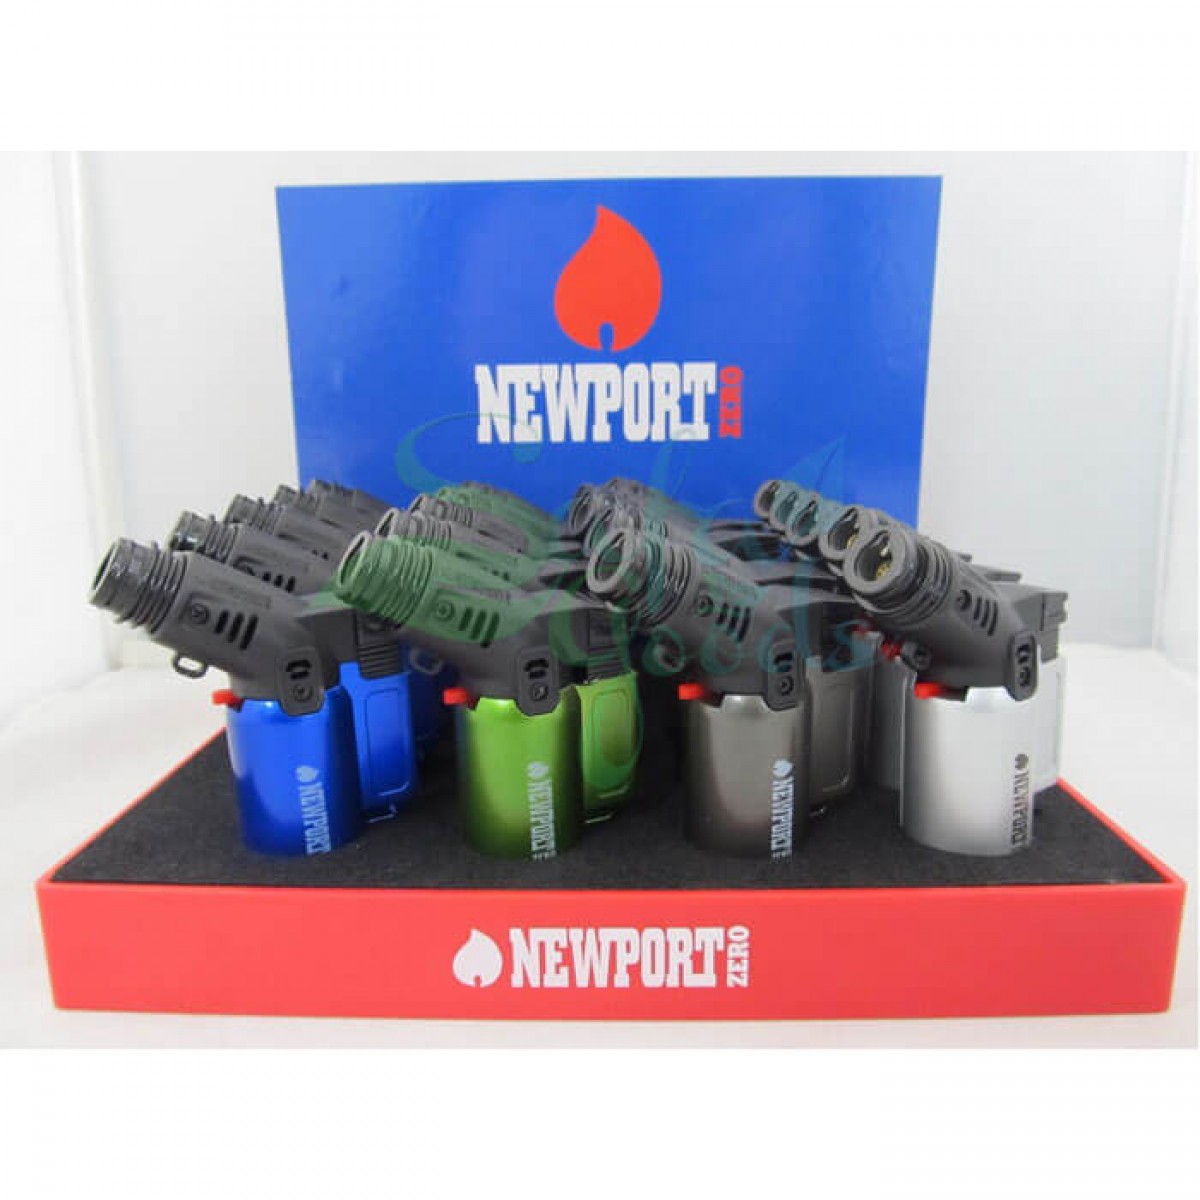 Newport Zero Small Torch -  20CT